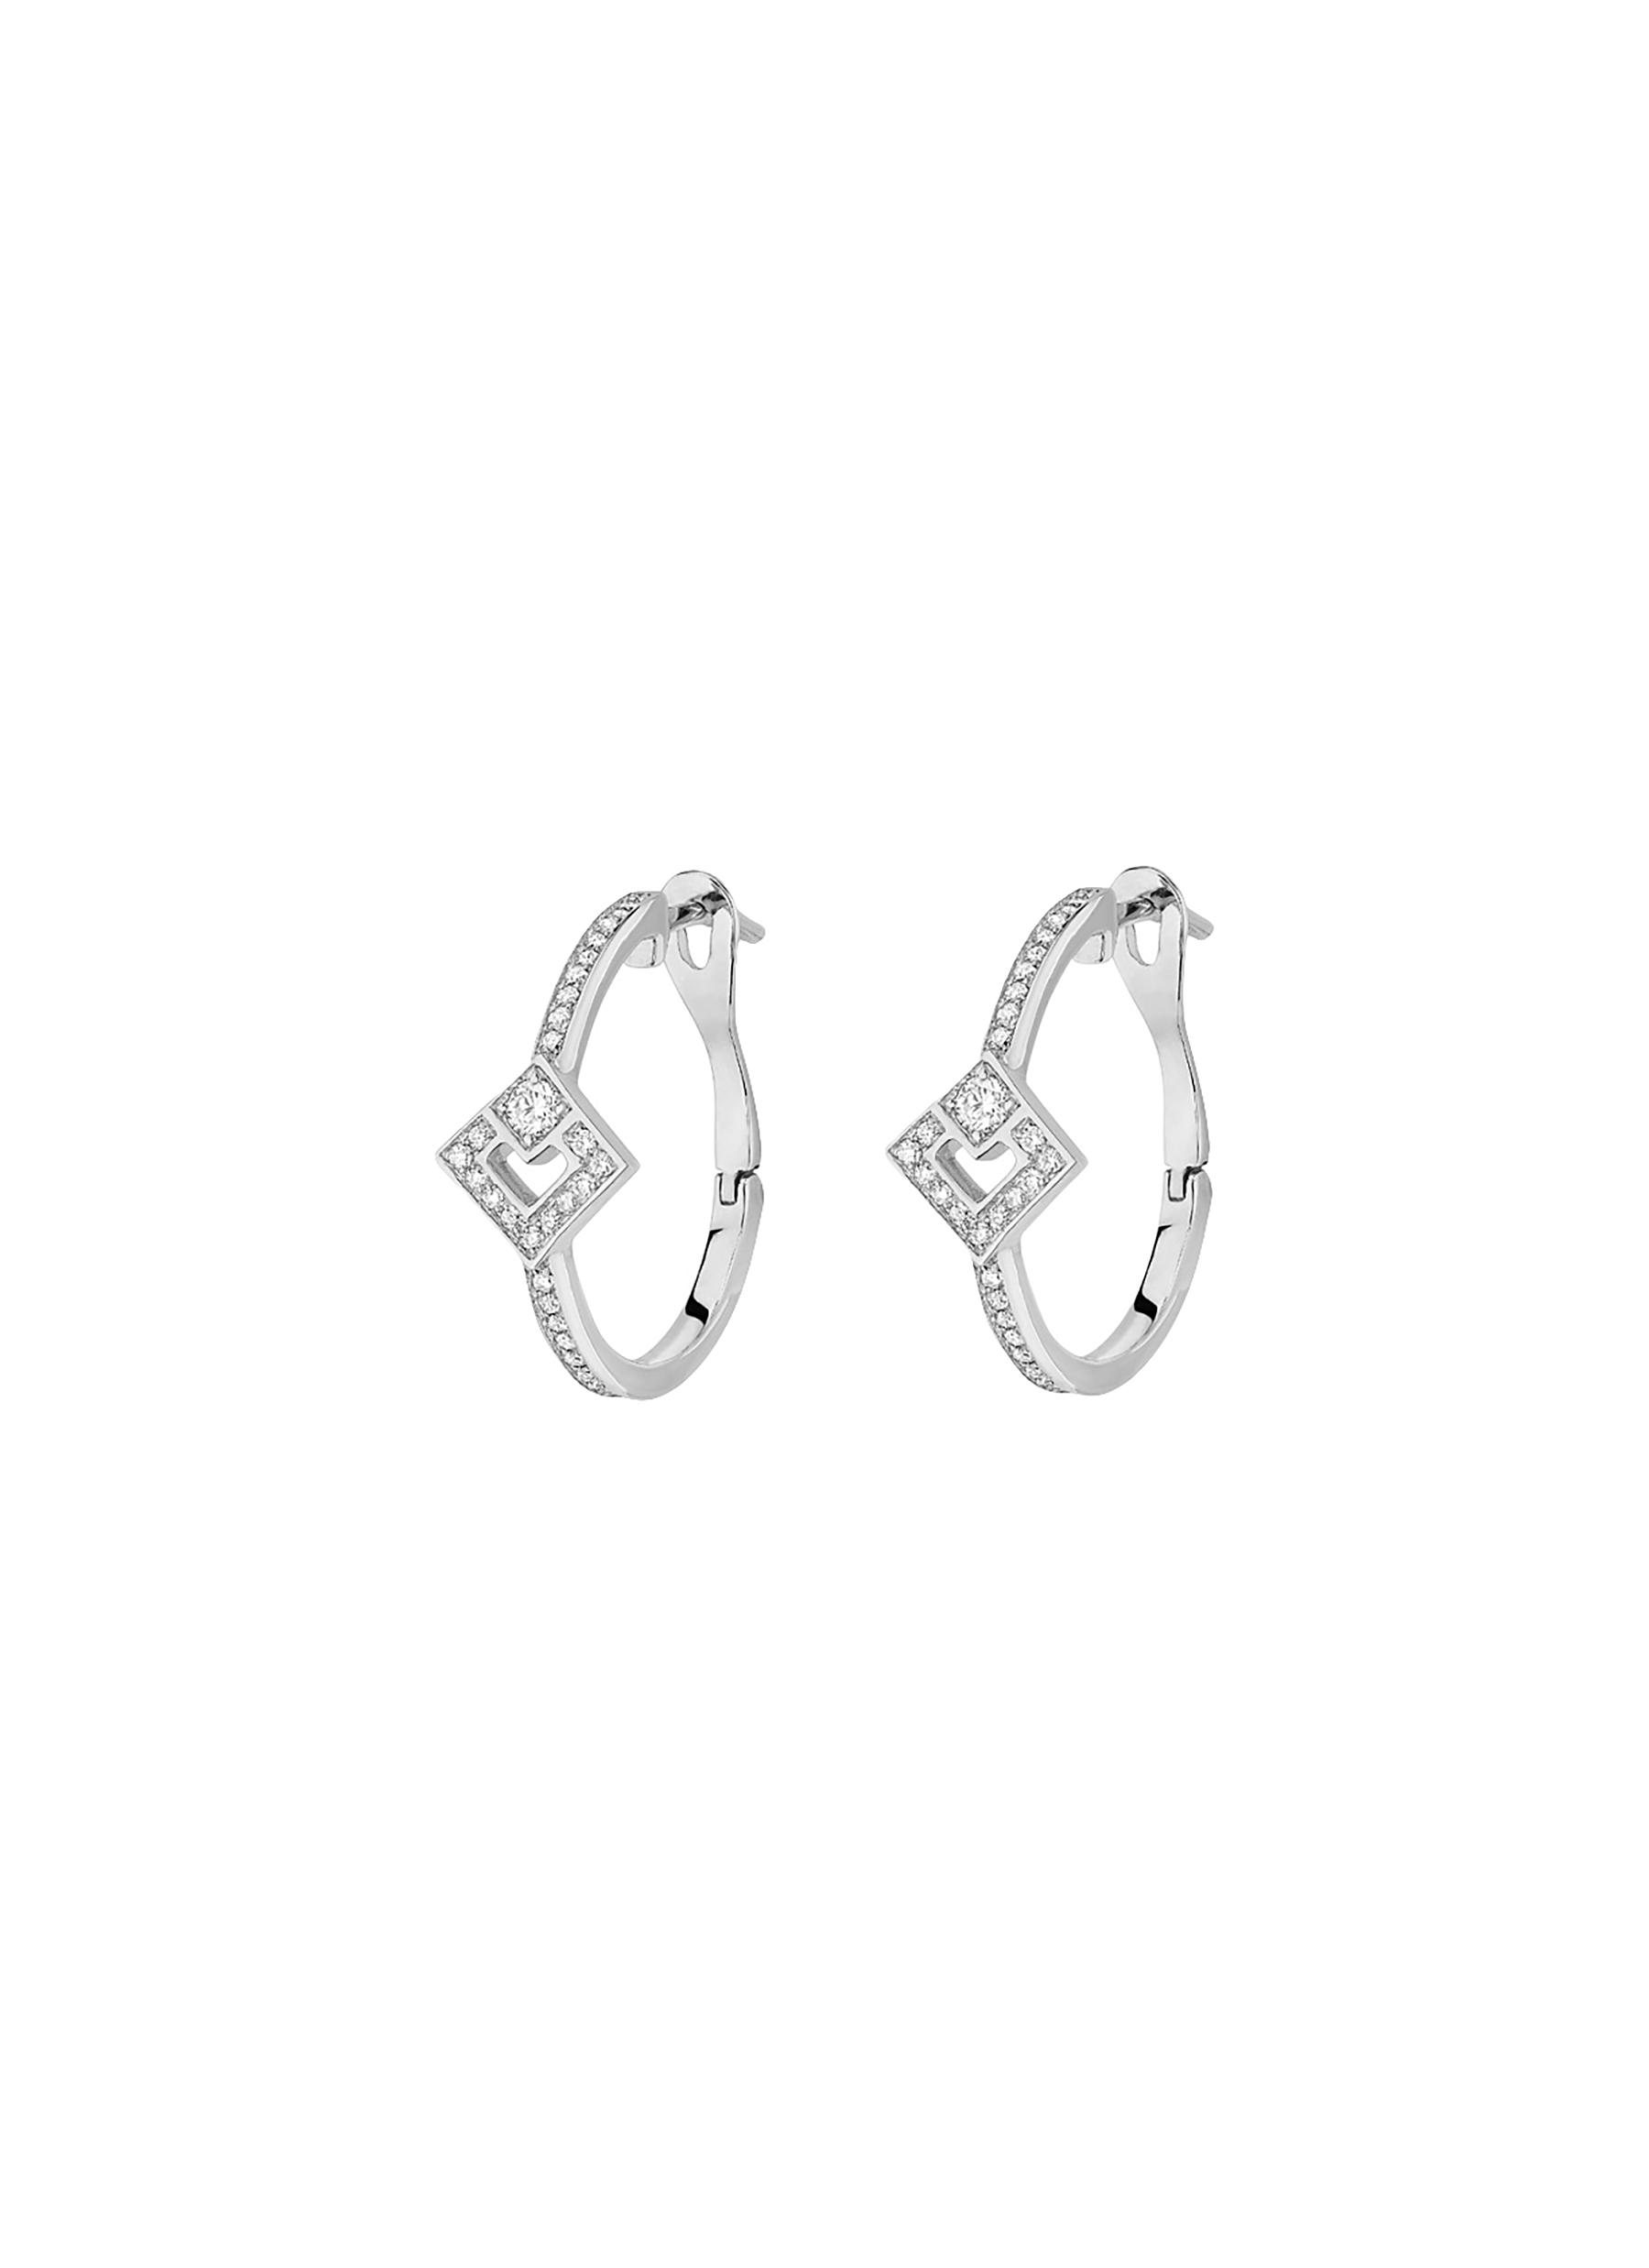 1.92ctw Hexagon Salt and Pepper Diamond Earrings 14K White Gold R3134 -  Aurora Designer